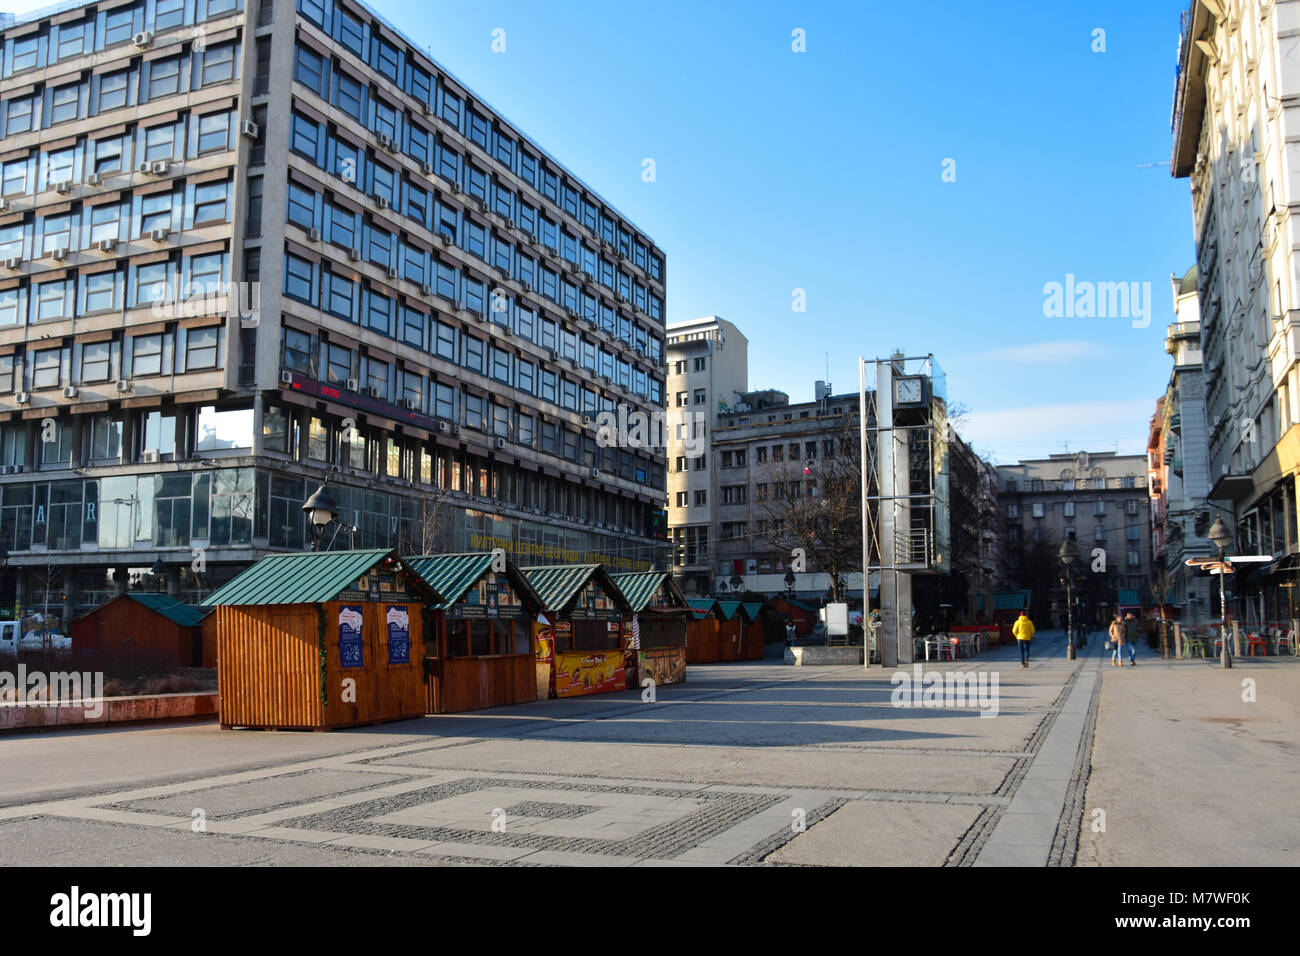 Belgrade, Serbia. February 10, 2017. Republic Square (Trg republike) on a sunny day Stock Photo